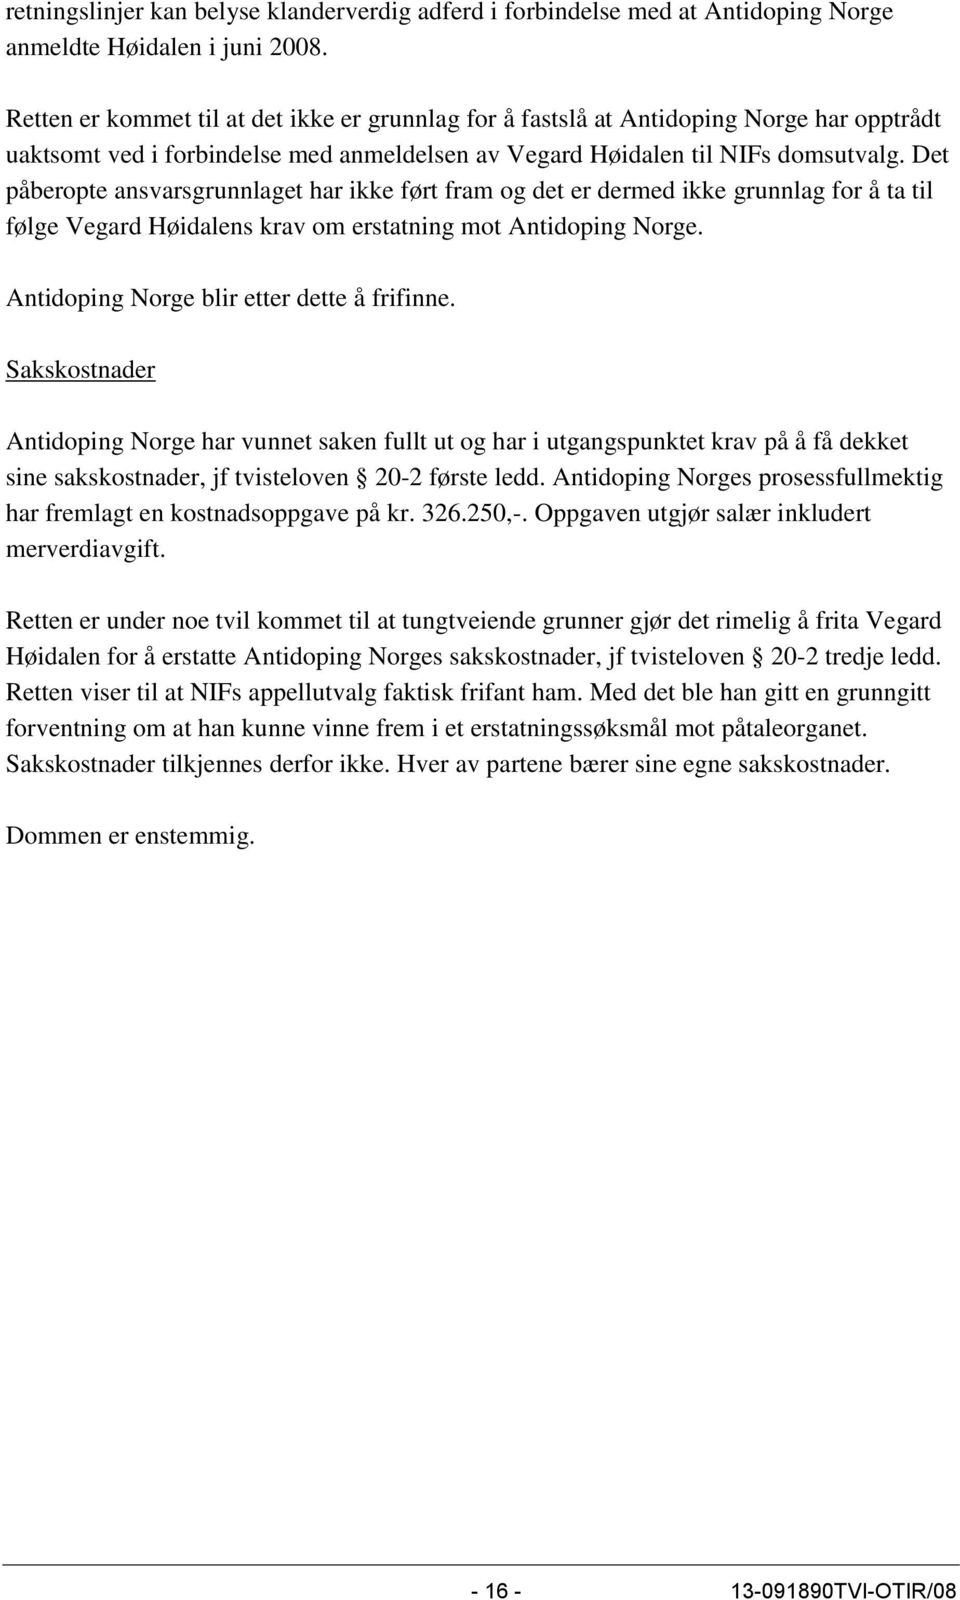 Det påberopte ansvarsgrunnlaget har ikke ført fram og det er dermed ikke grunnlag for å ta til følge Vegard Høidalens krav om erstatning mot Antidoping Norge.